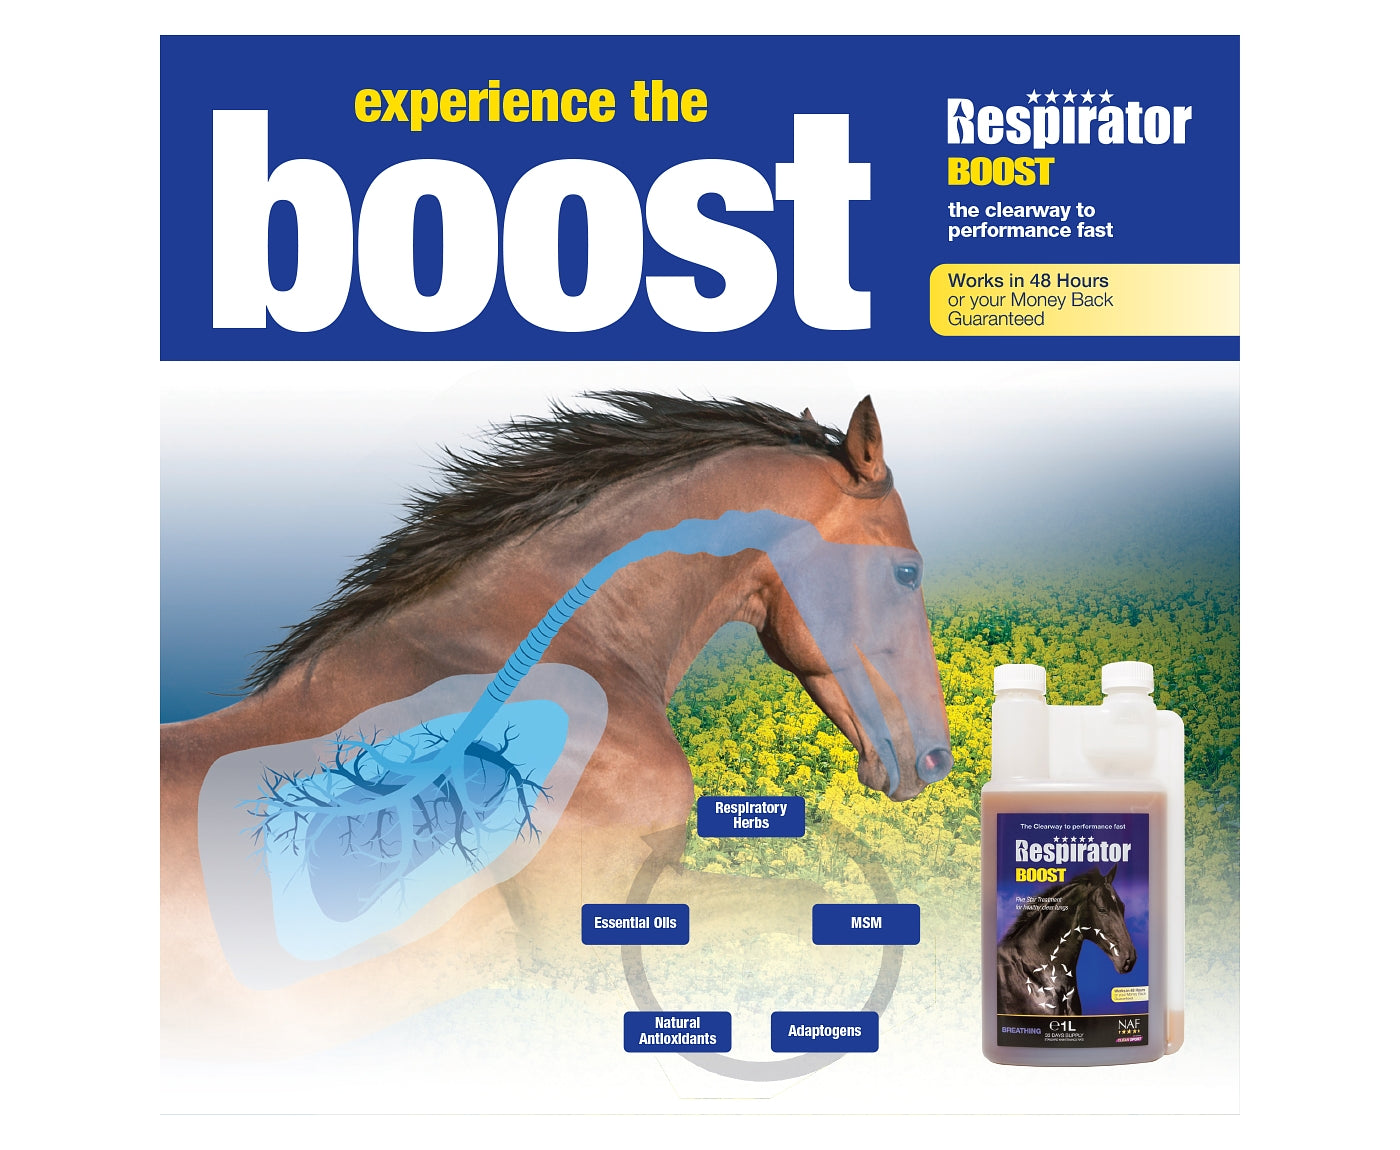 NAF - Respirator Boost | Horse Care - Buy Online SPR Centre UK